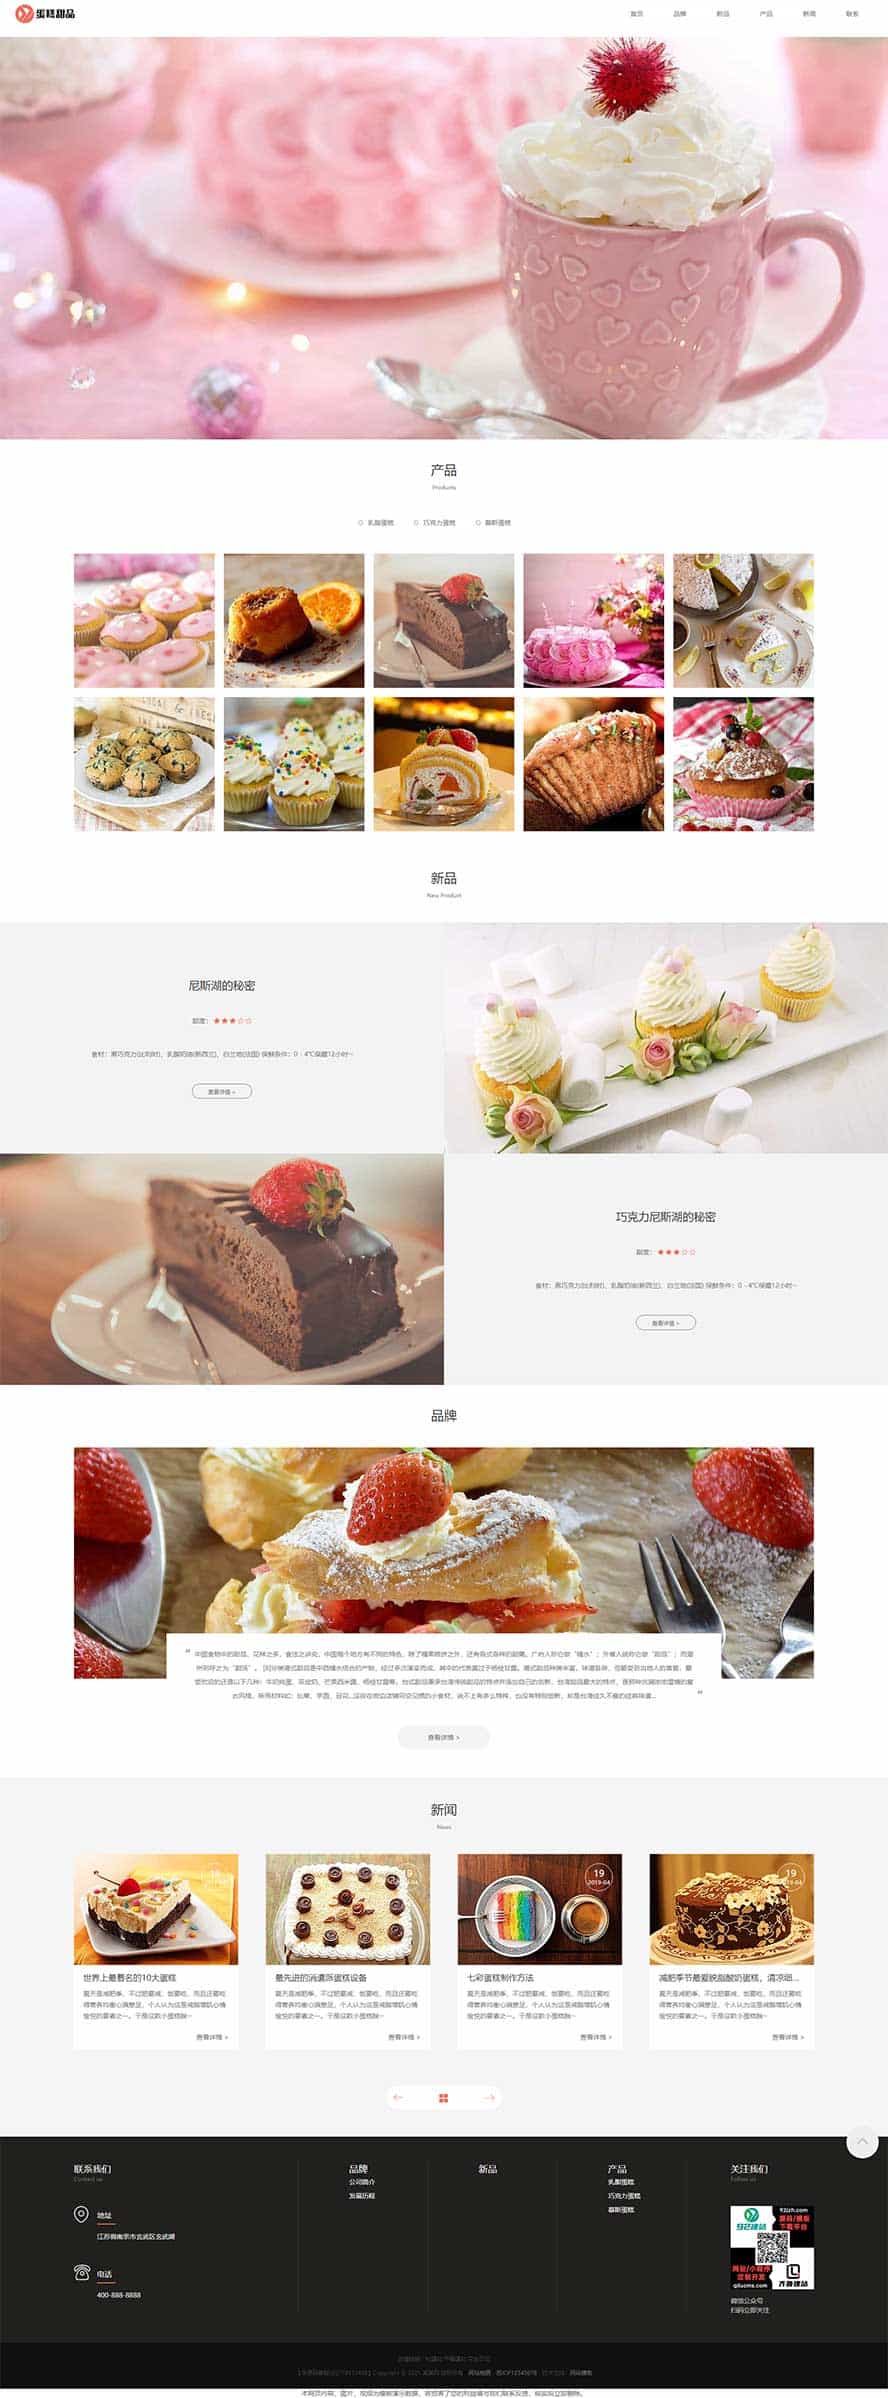 蛋糕网站源码,甜点网站源码,烘培网站源码,面包网站源码